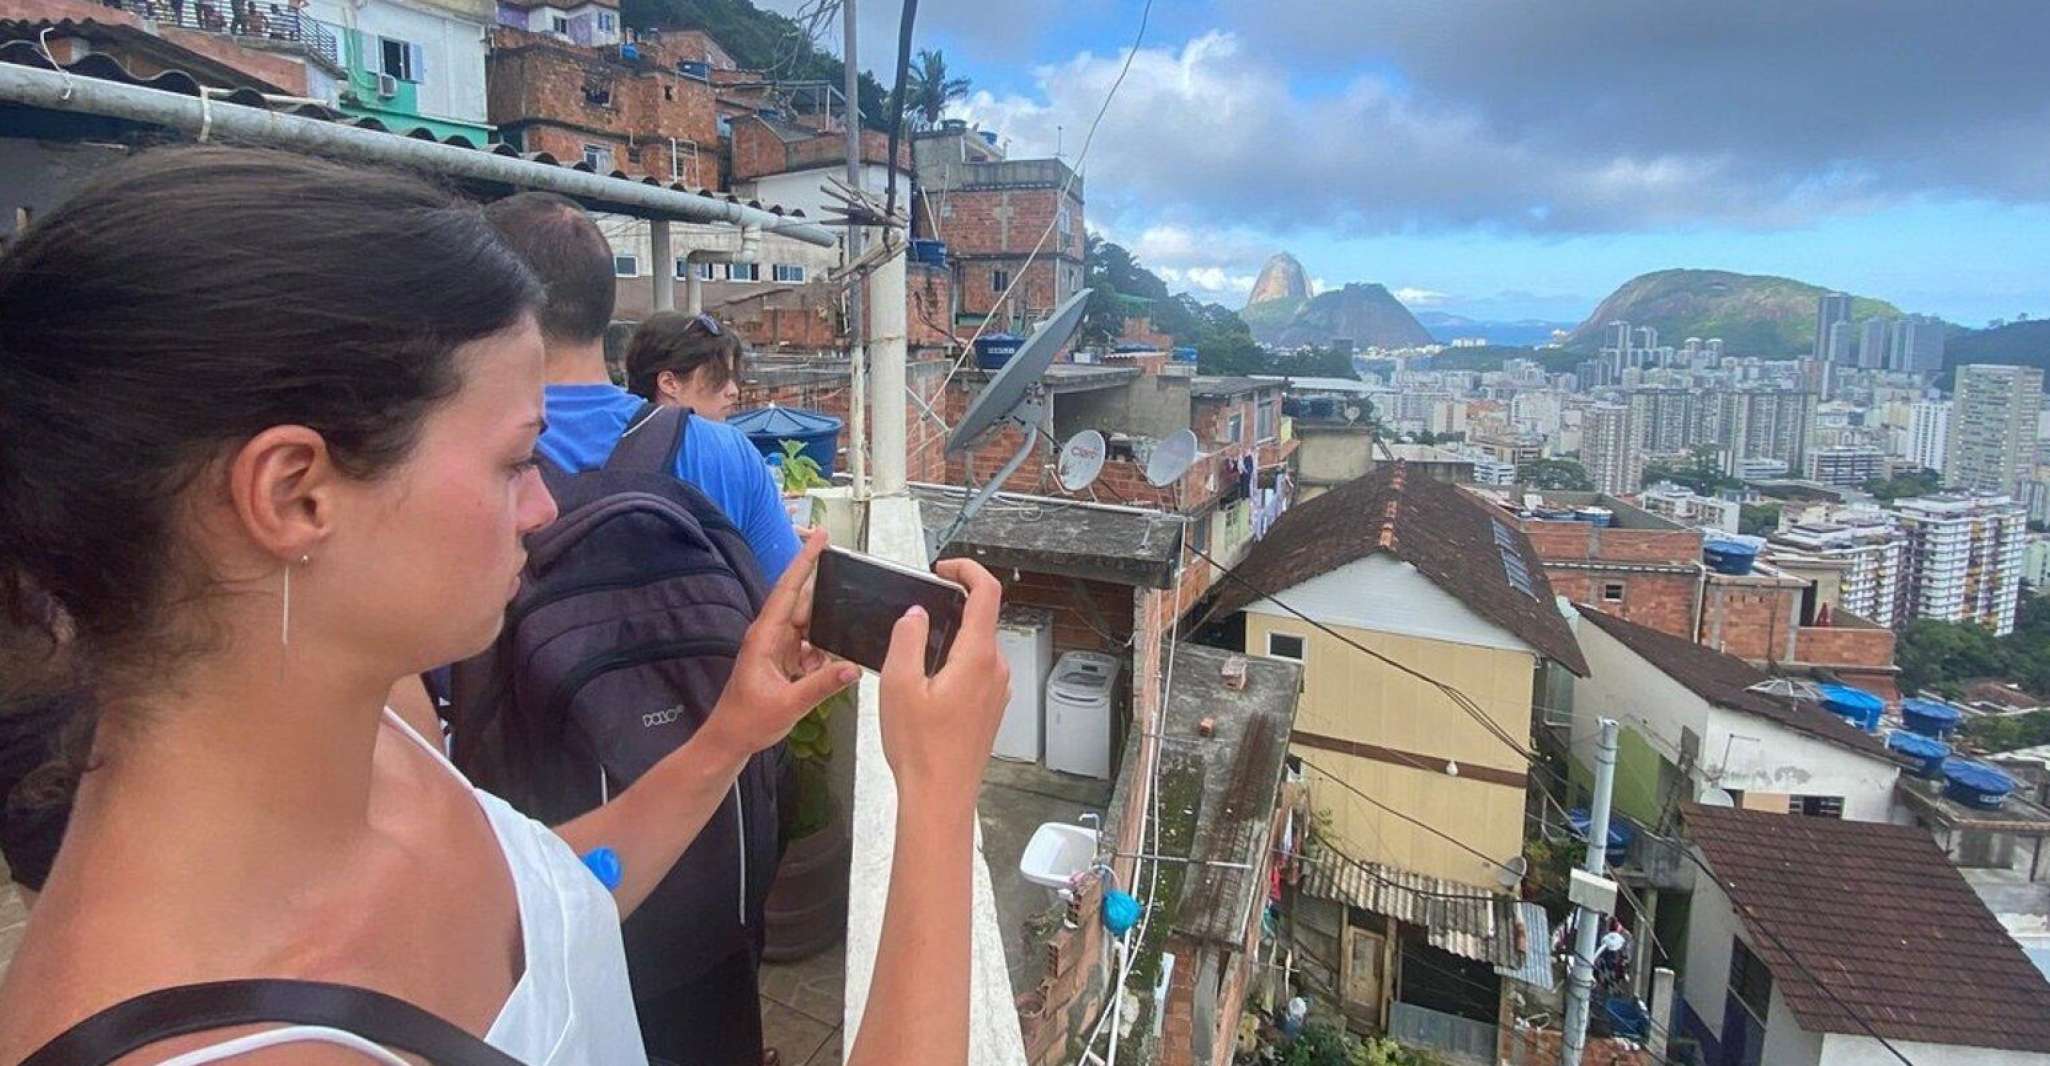 Rio de Janeiro, Favela Santa Marta Tour with a Local Guide - Housity